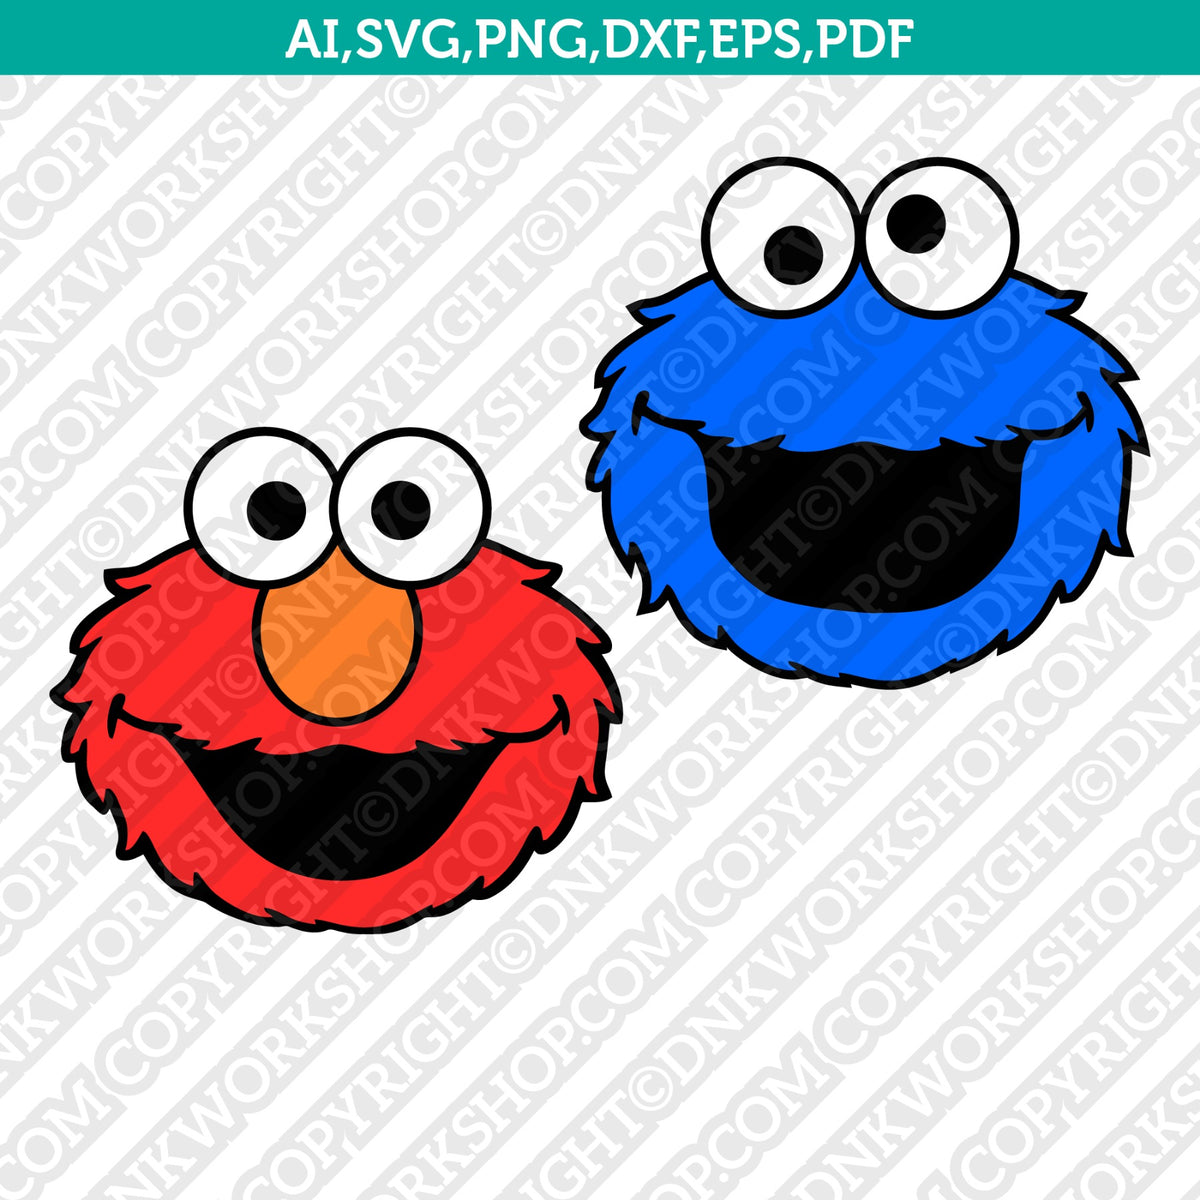 Sesame Street SVG, PNG, DXF